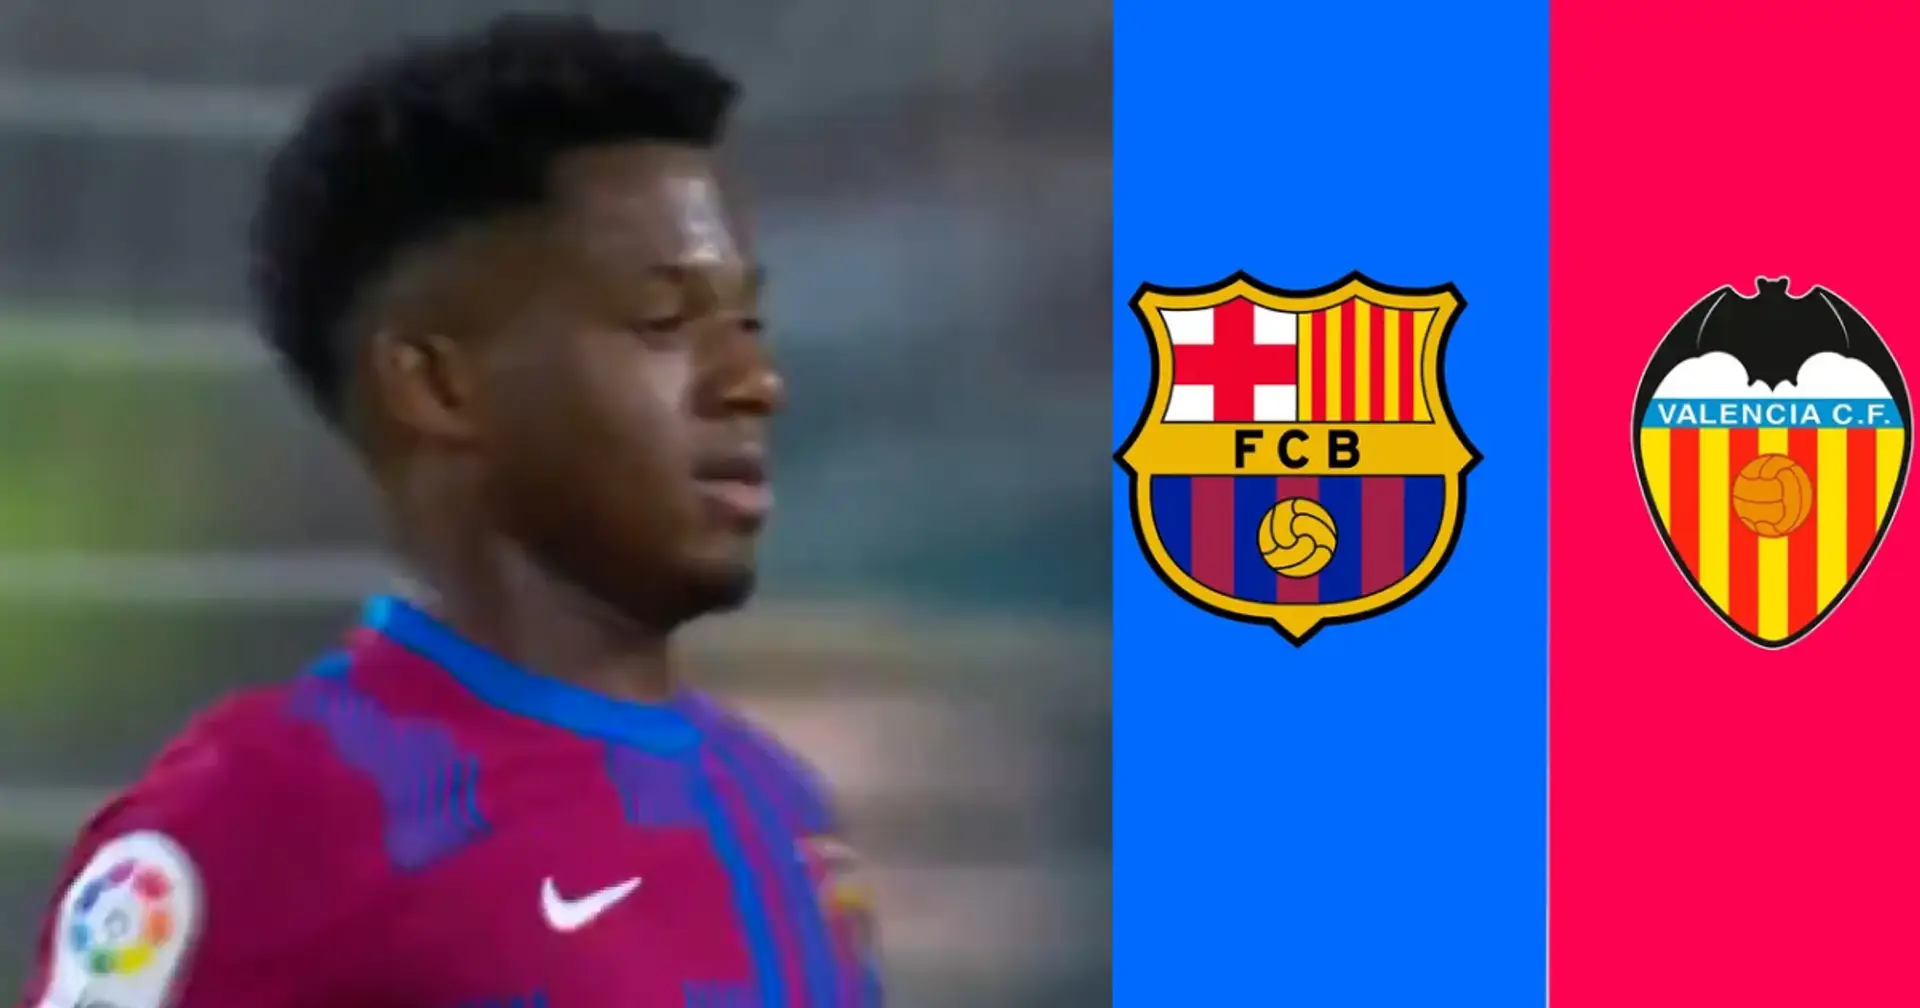 "Quand Fati était LUI": les Cules réagissent alors que le Barça partage en vidéo un golazo d'Ansu avant le match vs Valence